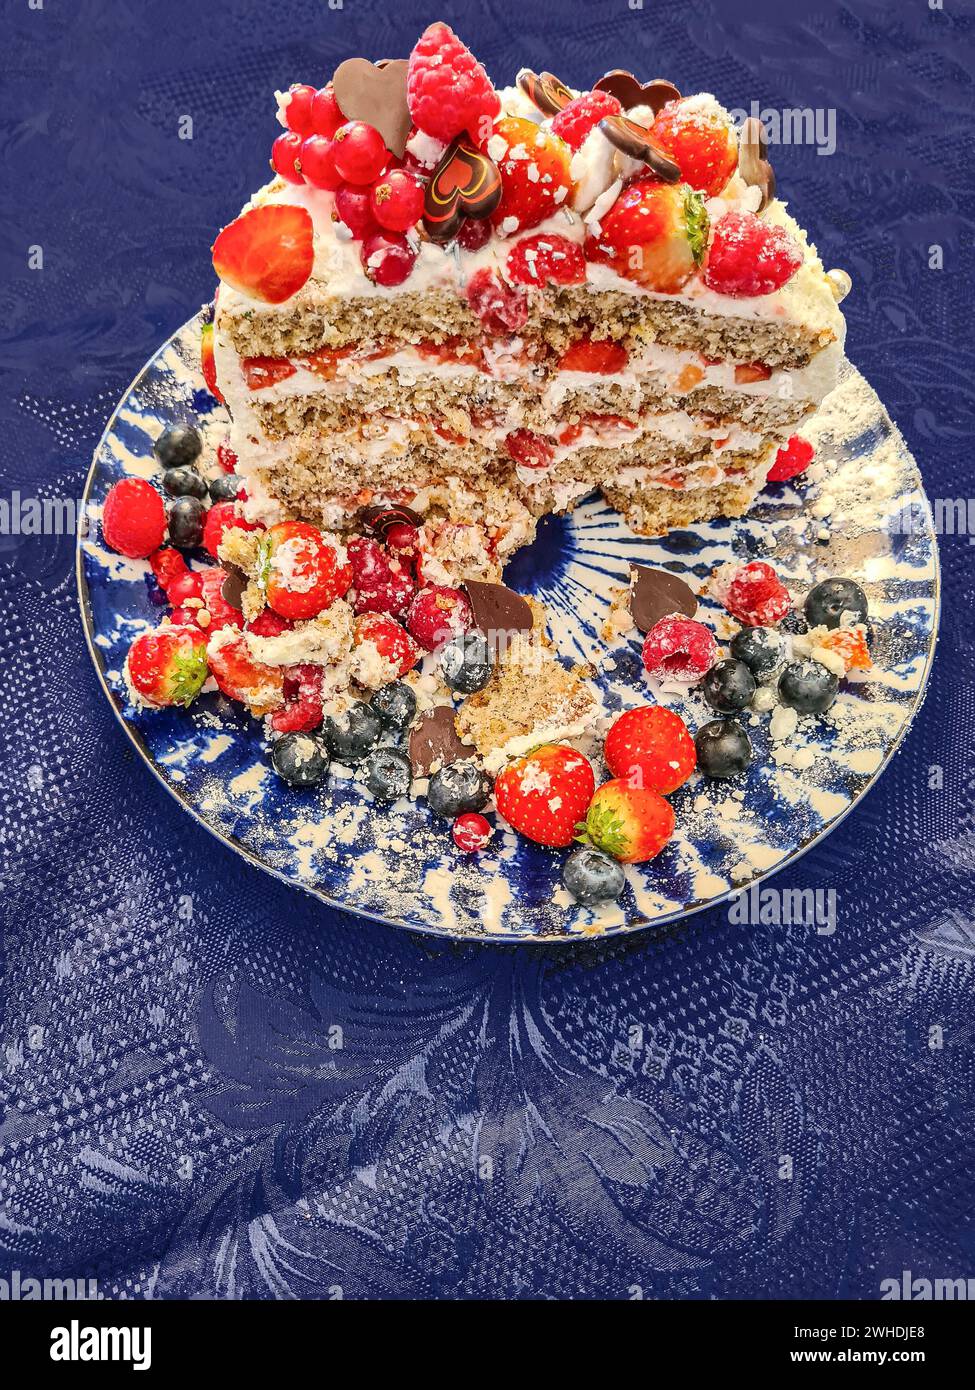 Una torta alla panna natalizia con frutta come fragole, lamponi, ribes e mirtilli mentre la decorazione viene tagliata e mostra la sezione trasversale del c Foto Stock